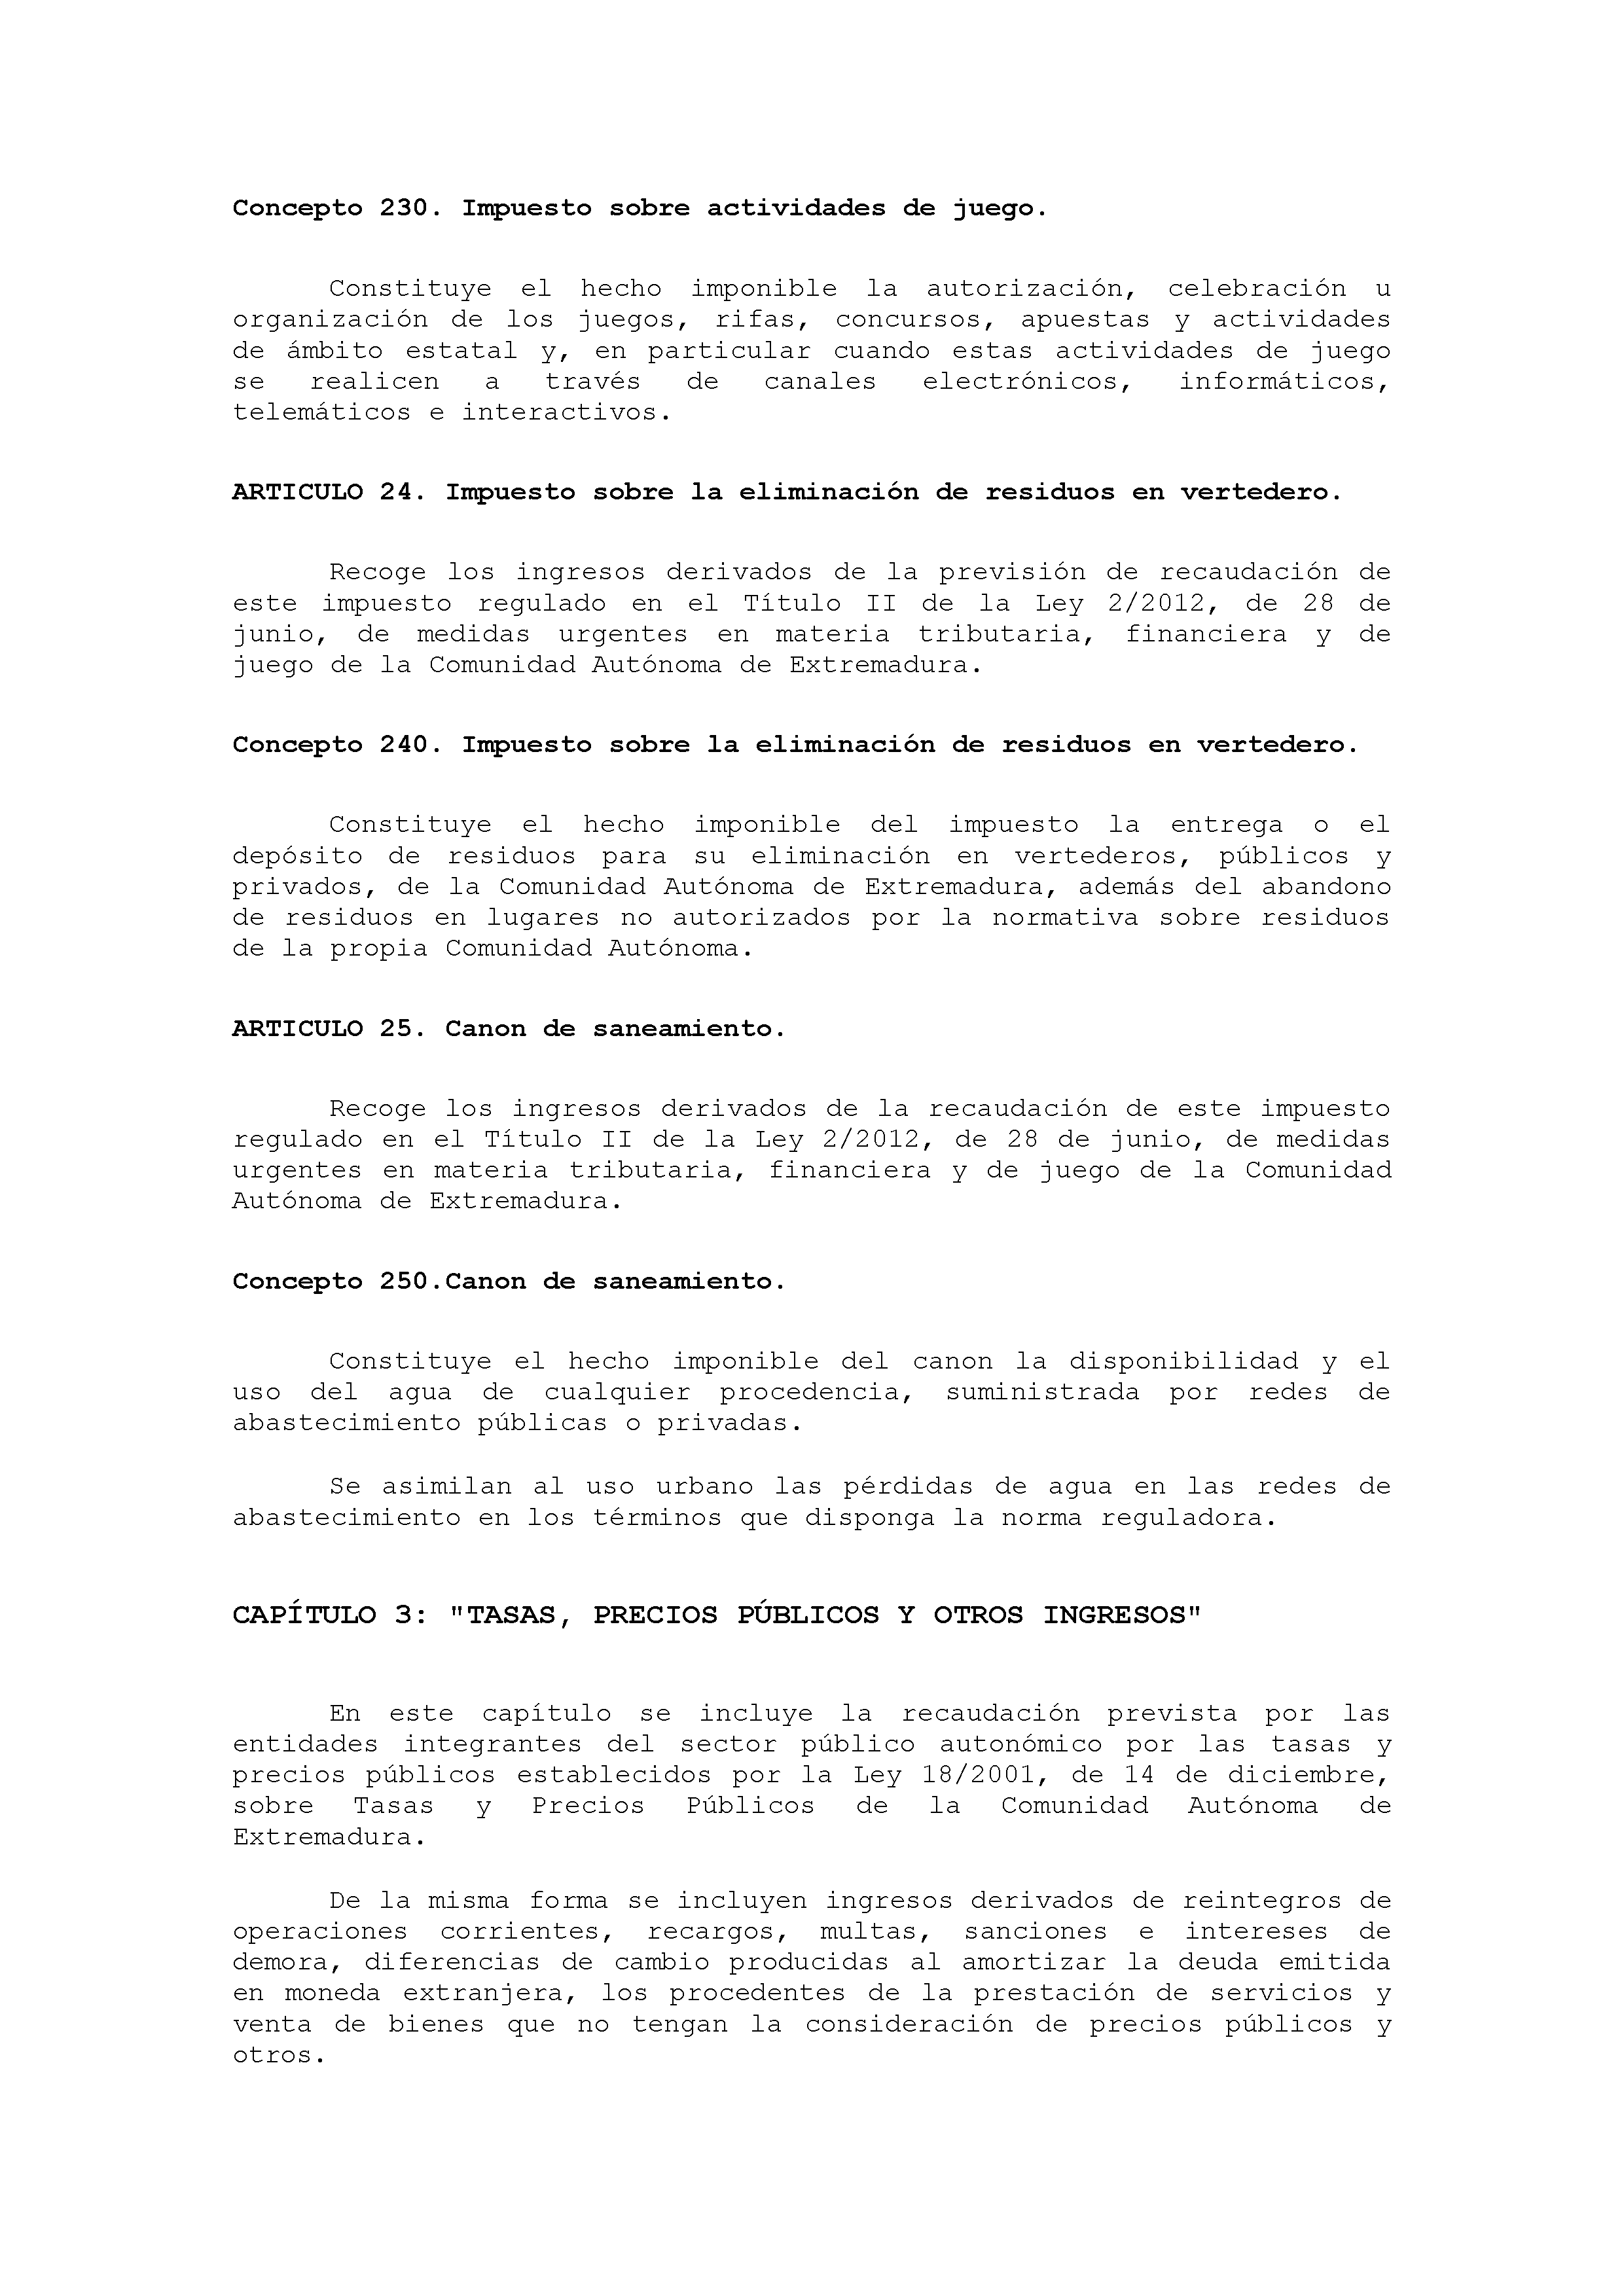 ANEXO VIII CÓDIGO DE LA CLASIFICACIÓN ECONÓMICA DE LOS INGRESOS PÚBLICOS Pag 8